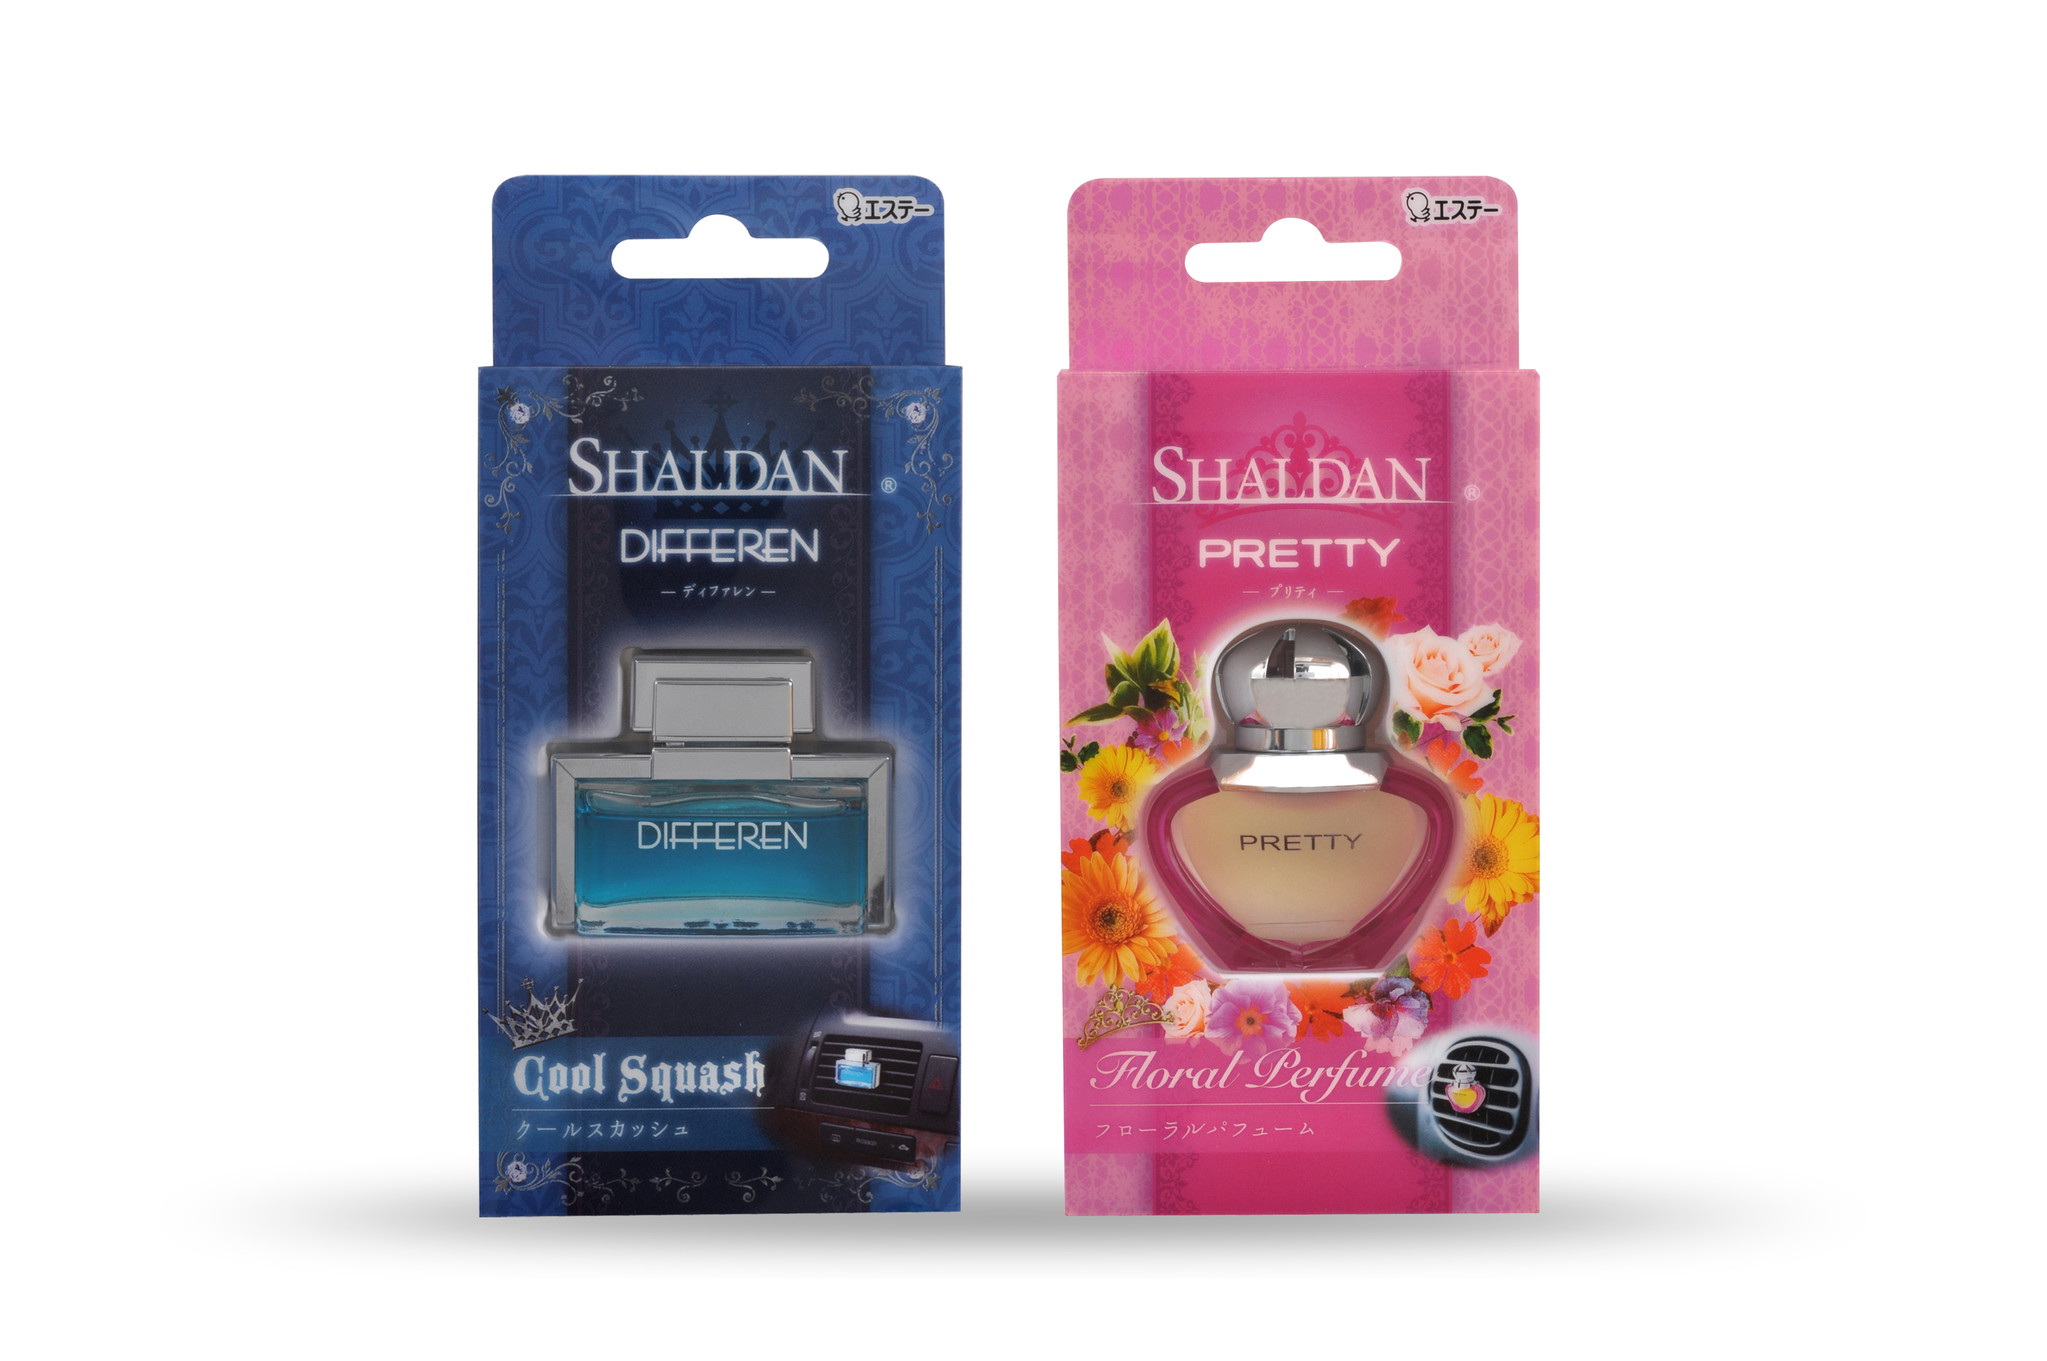 エステー こだわりの香水調の車用芳香剤 Shaldan Differen と Shaldan Pretty を新発売 エステー株式会社のプレスリリース